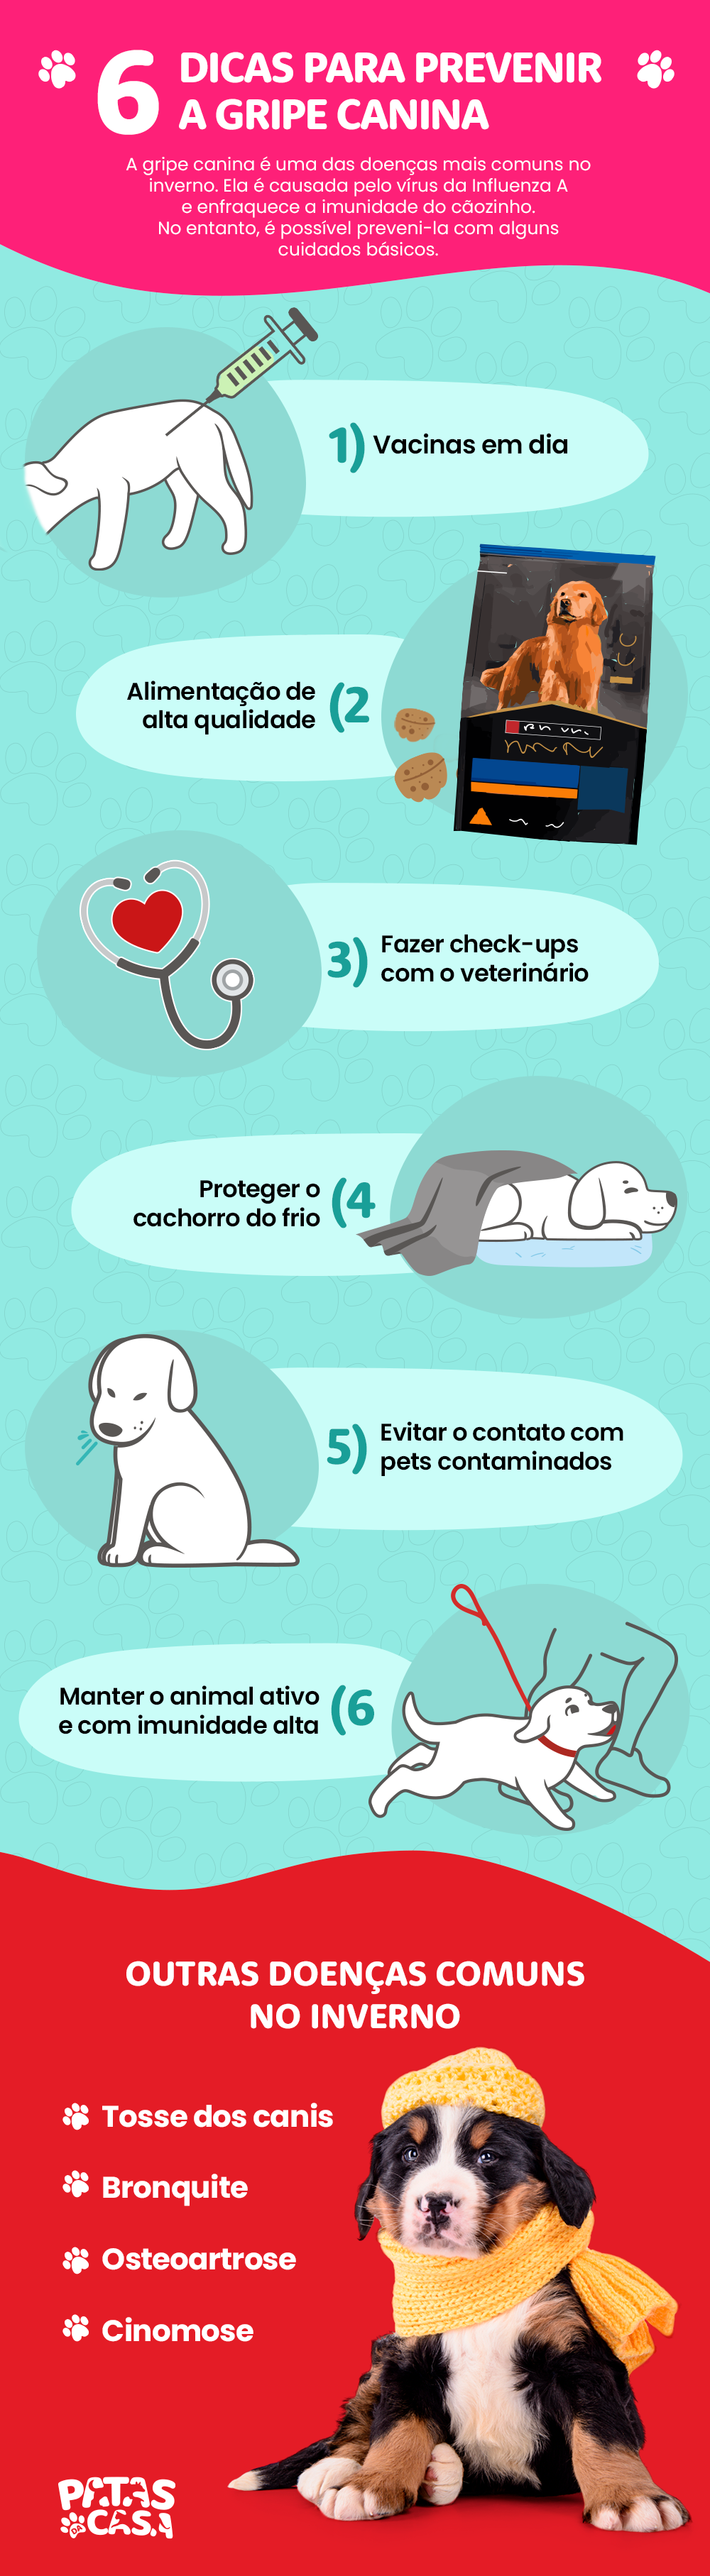 Bloco informativo mostrando seis dicas de como prevenir a gripe canina